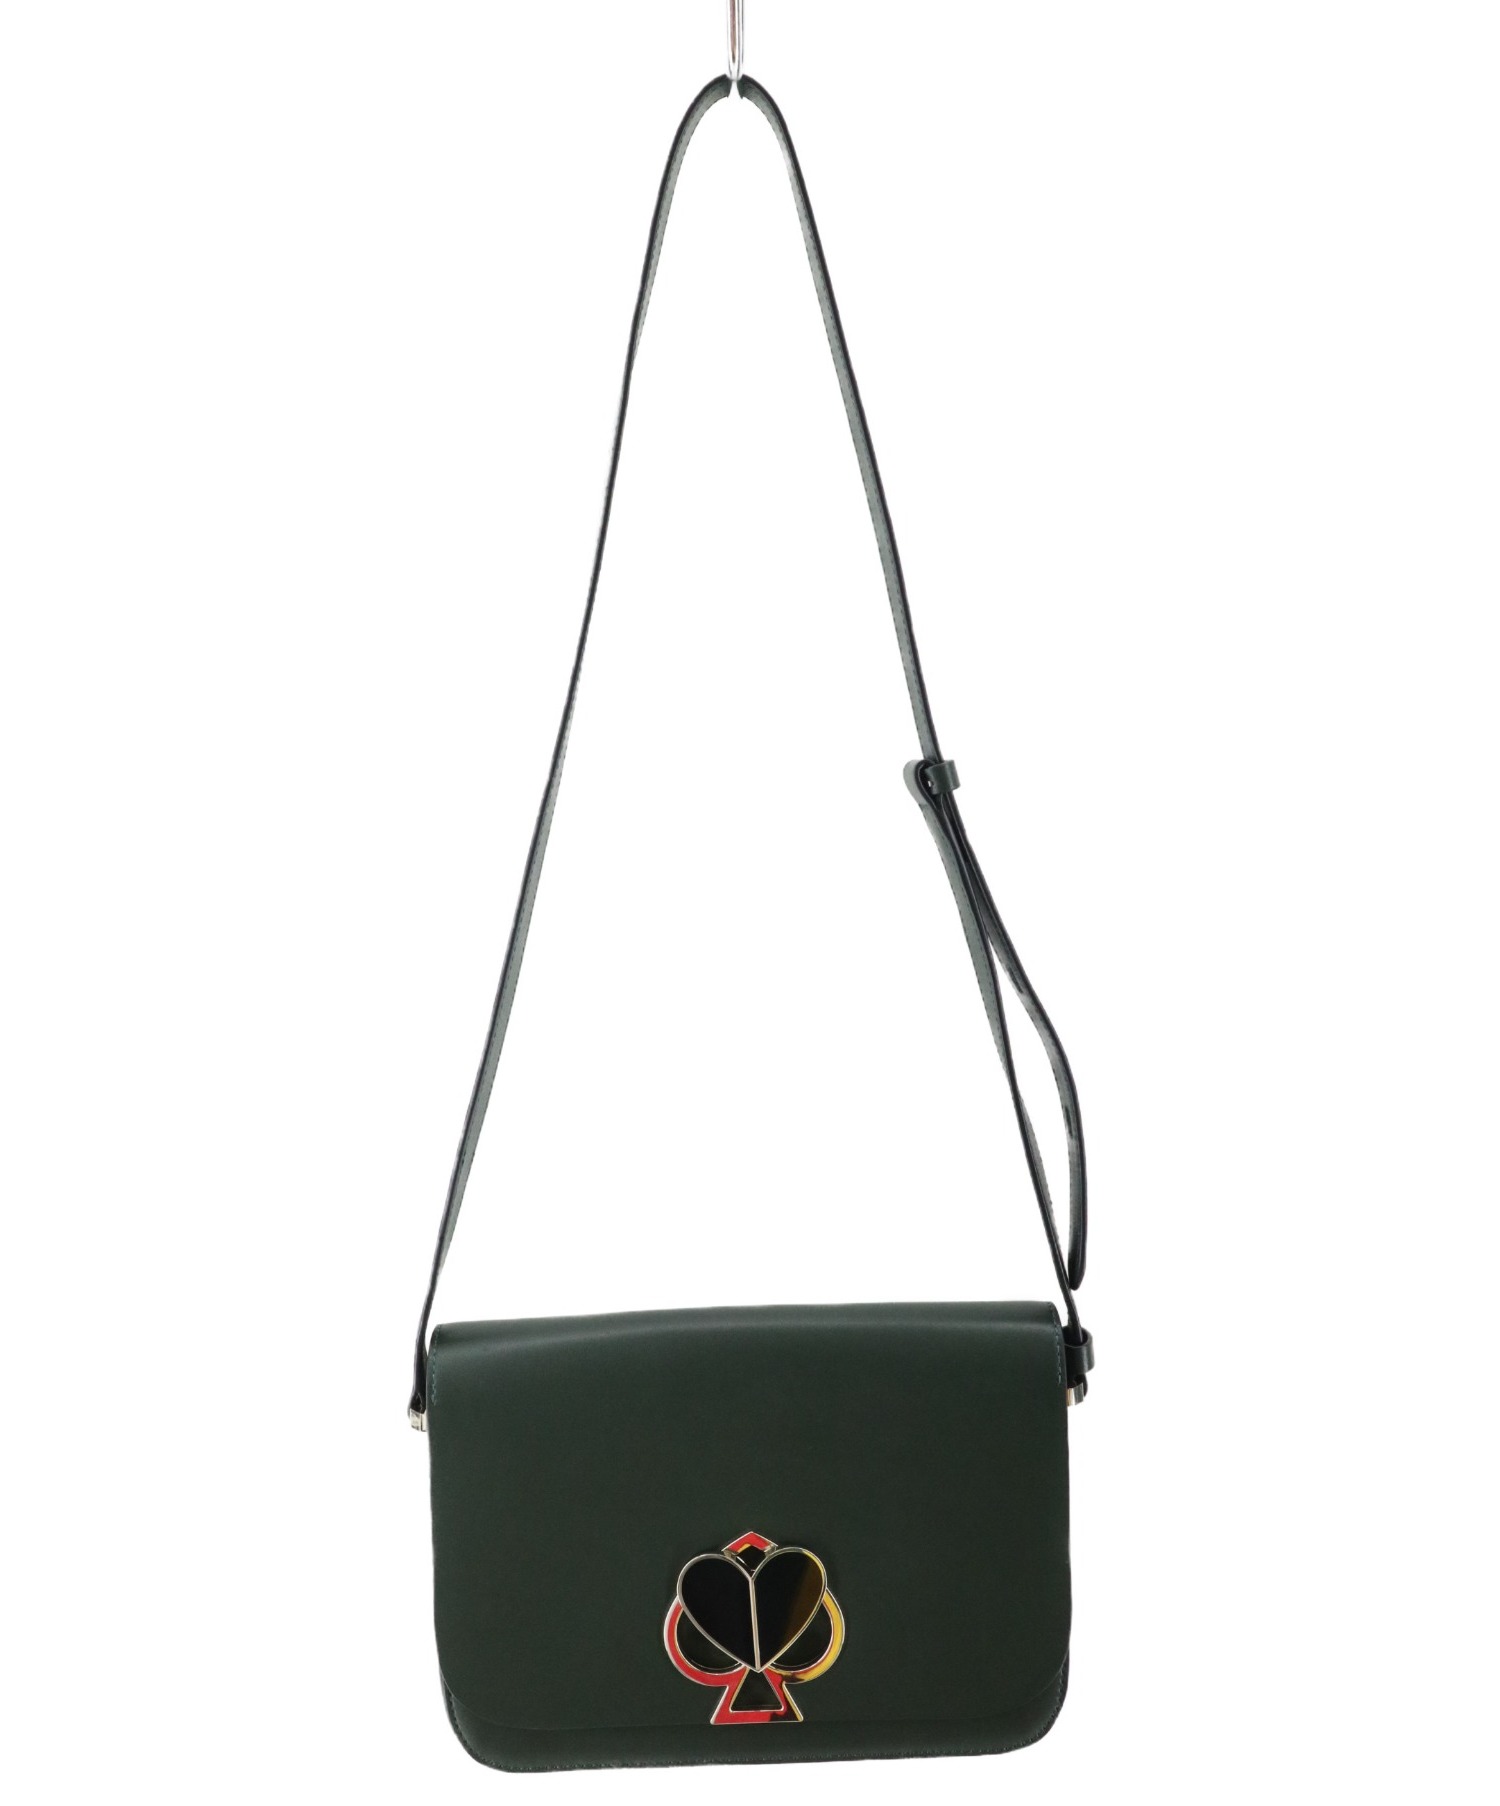 オカヤドカリ 美品✨ ケイトスペード ターンロック 深緑 ポシェット ショルダーバッグ ニコラ ハンドバッグ